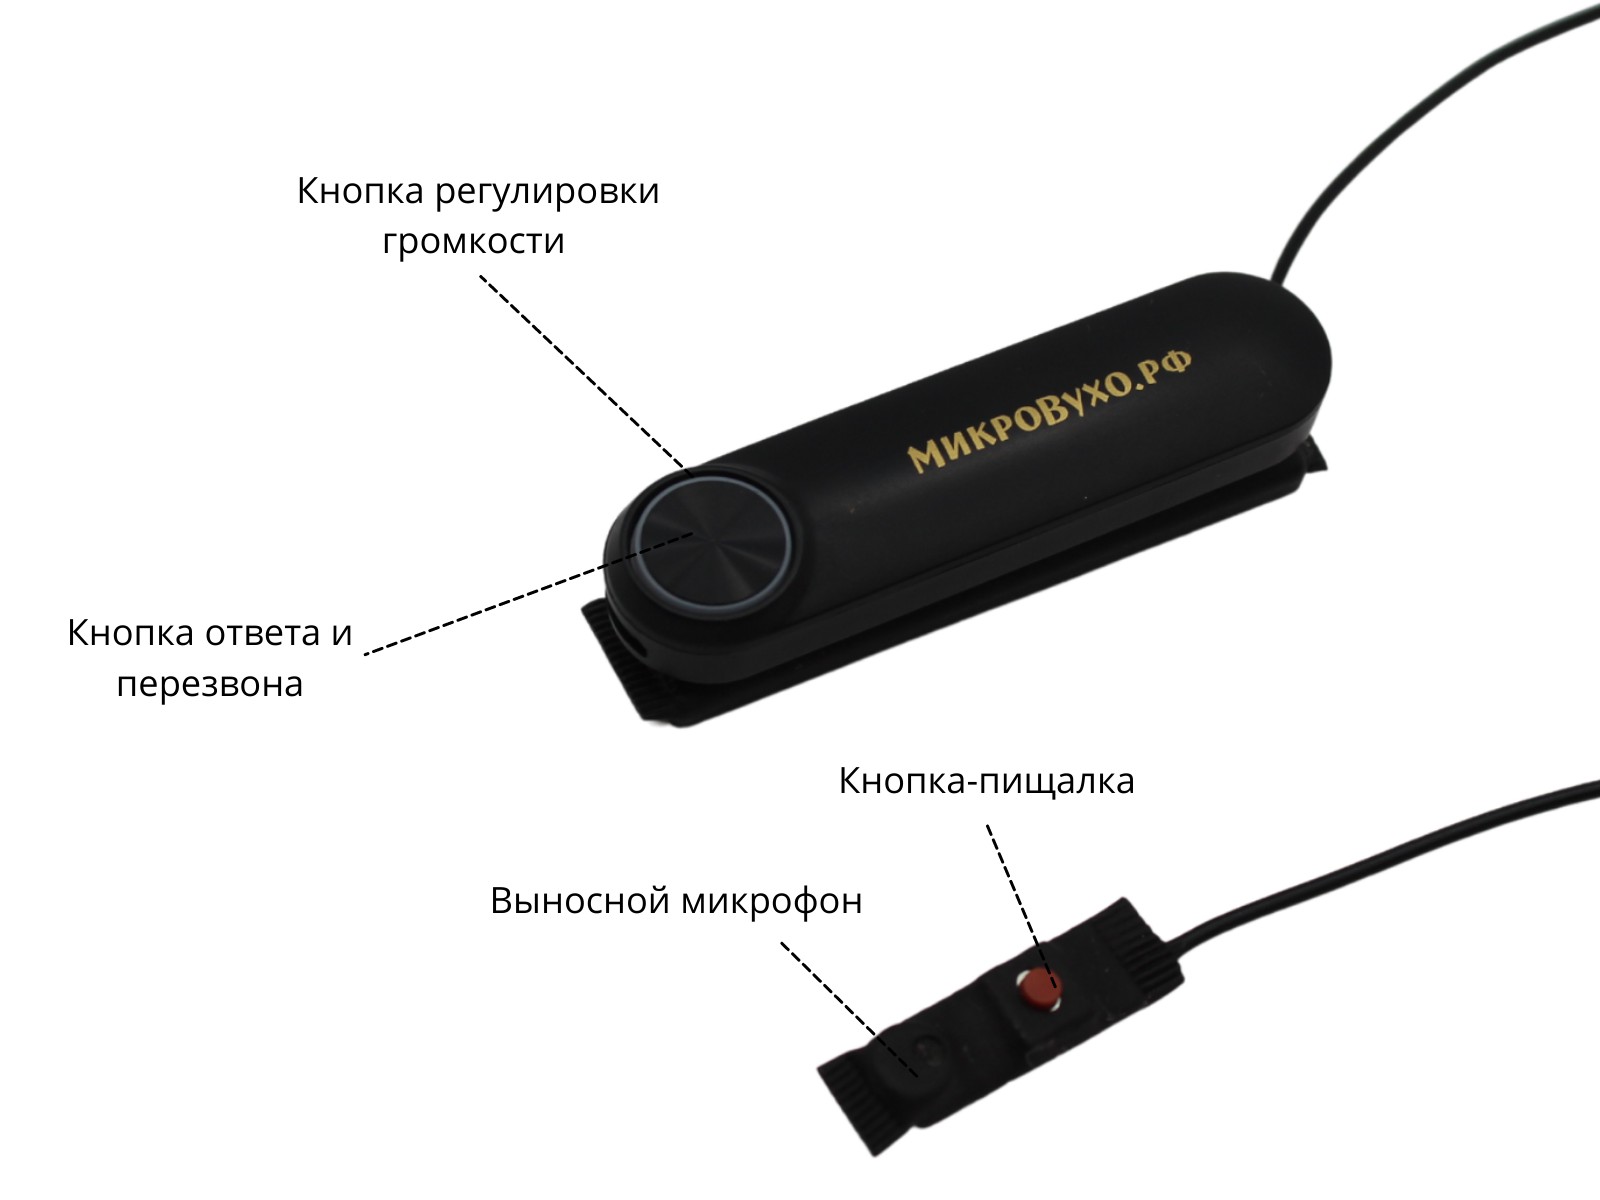 Универсальная гарнитура Bluetooth Box Standard Plus с капсулой К5 4 мм и магнитами 2 мм 4